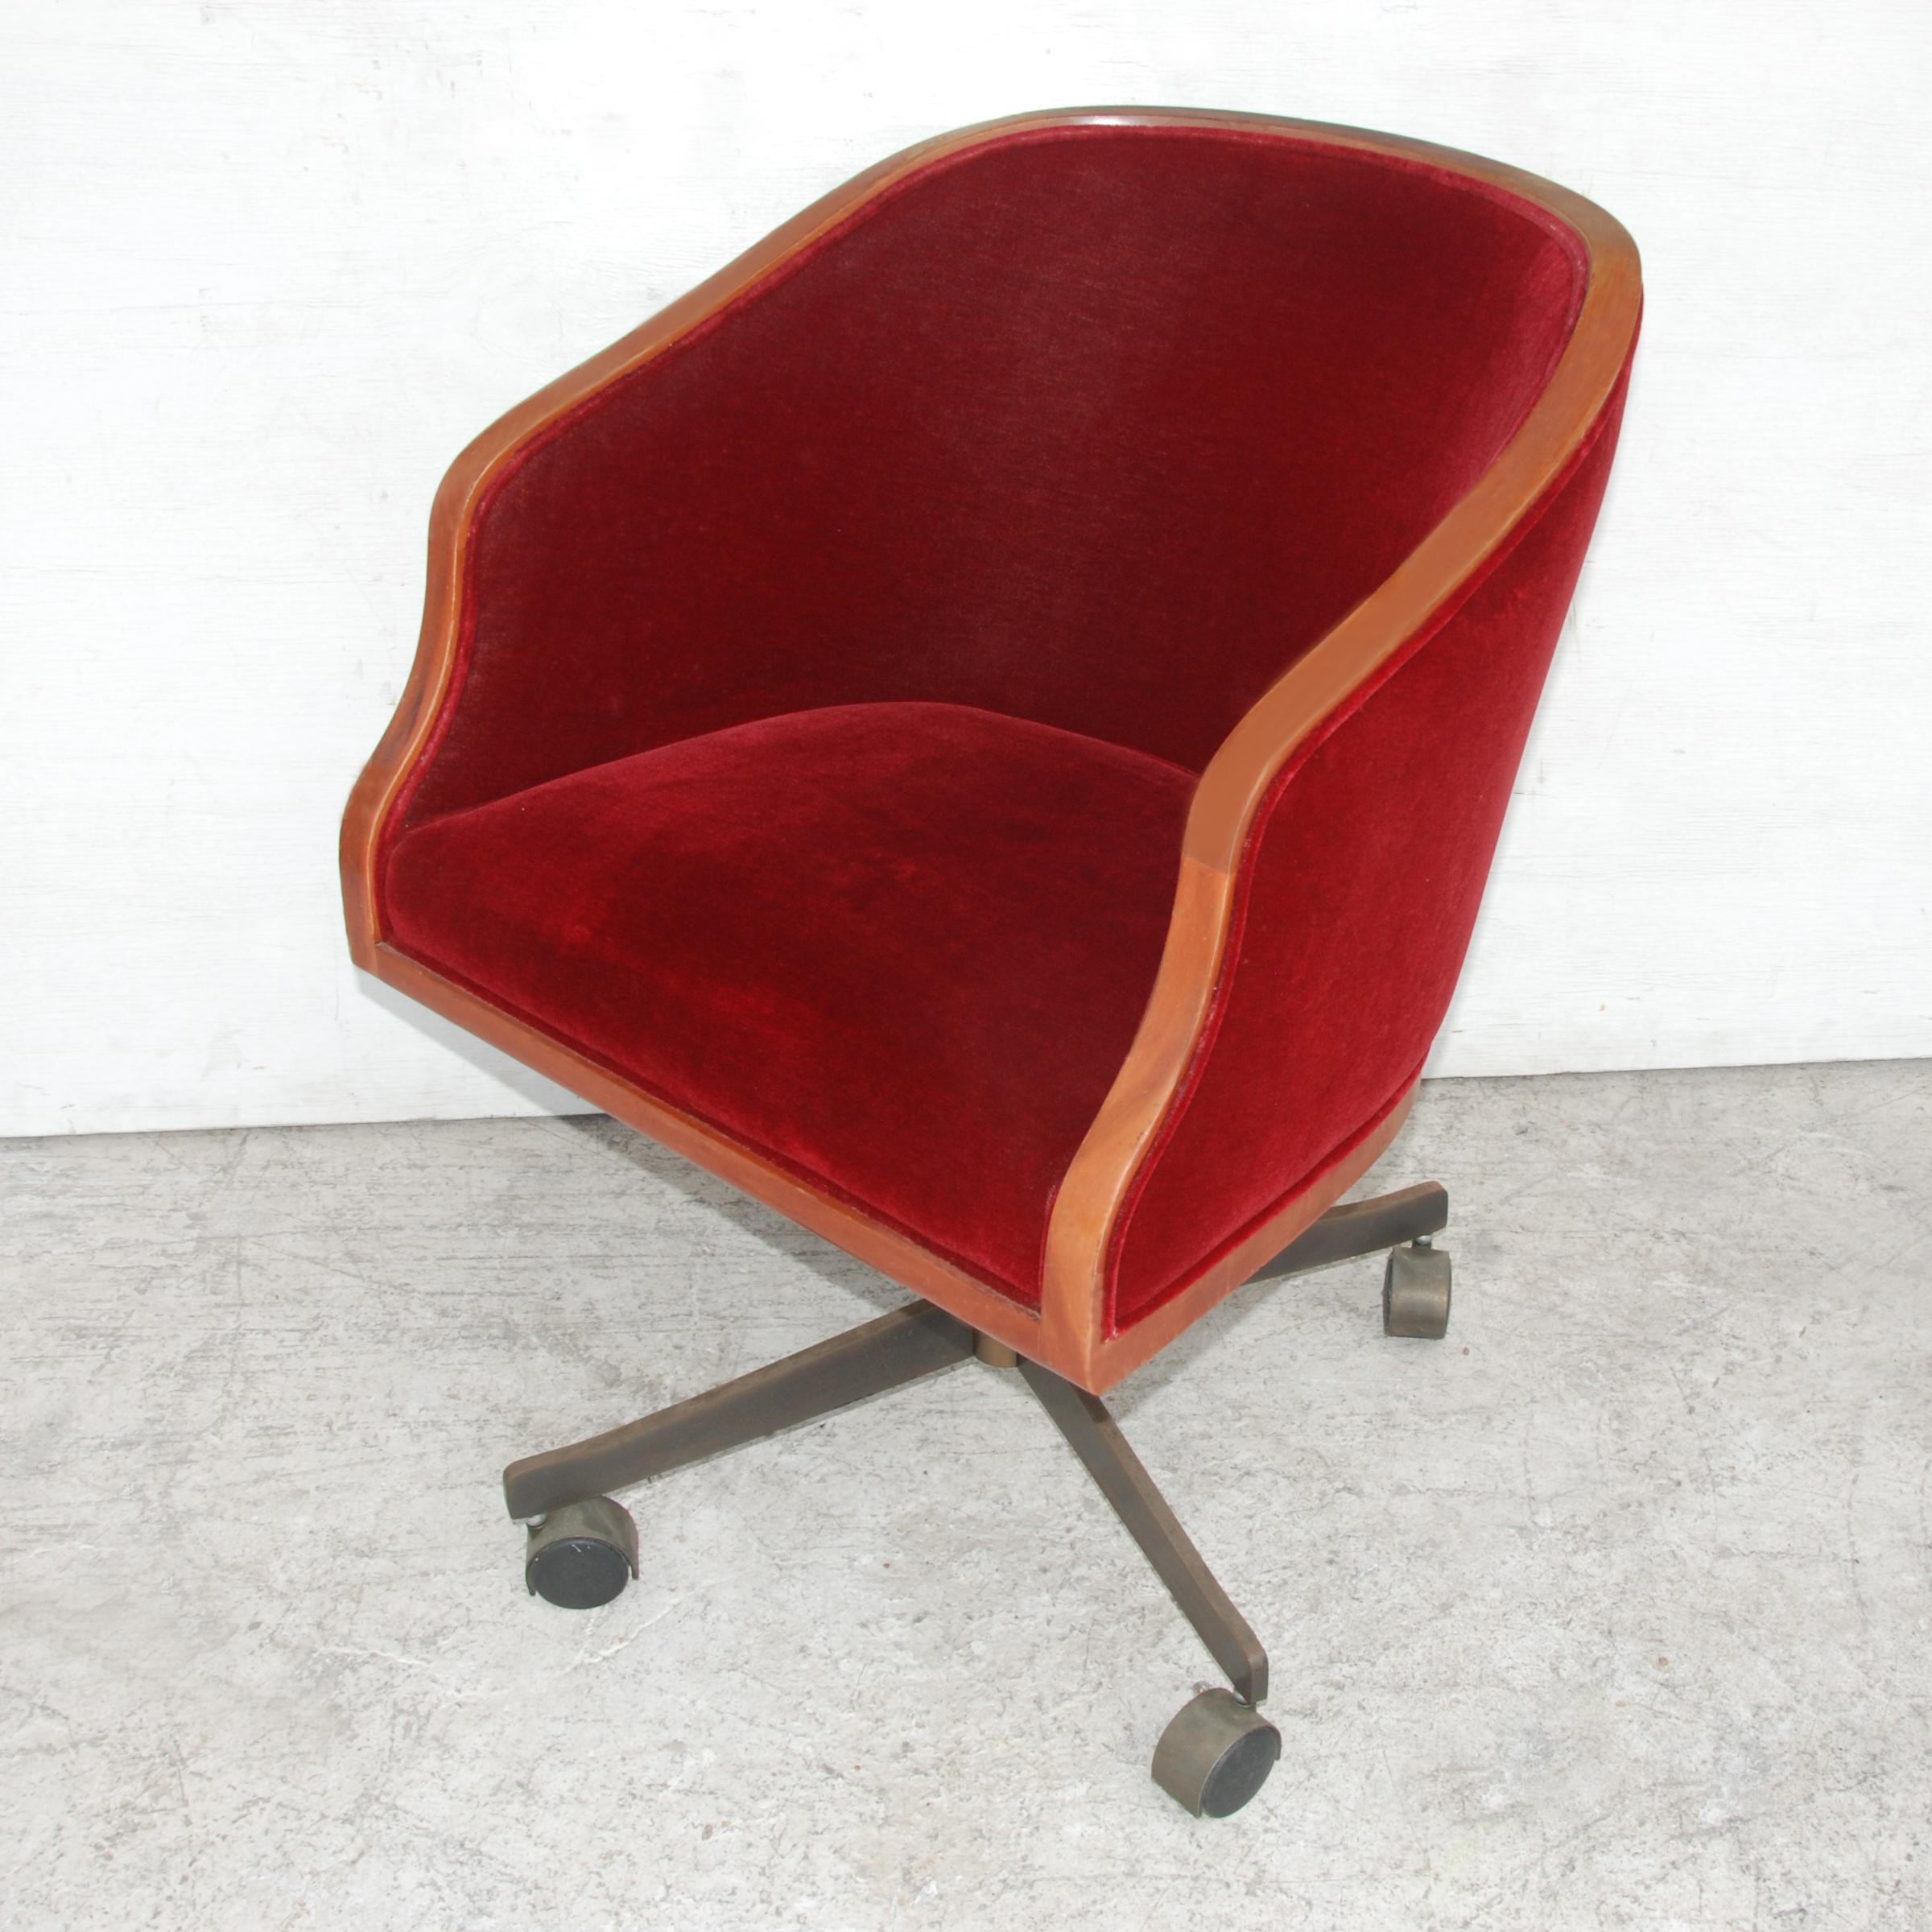 1 fauteuil de direction Ward Bennett en chêne et mohair
Conçu en 1967
 
Version rare de la chaise de travail. Rembourrage original en mohair avec des cadres en chêne. Base réglable en bronze avec roulettes. 6 disponibles.

Mesures : 27